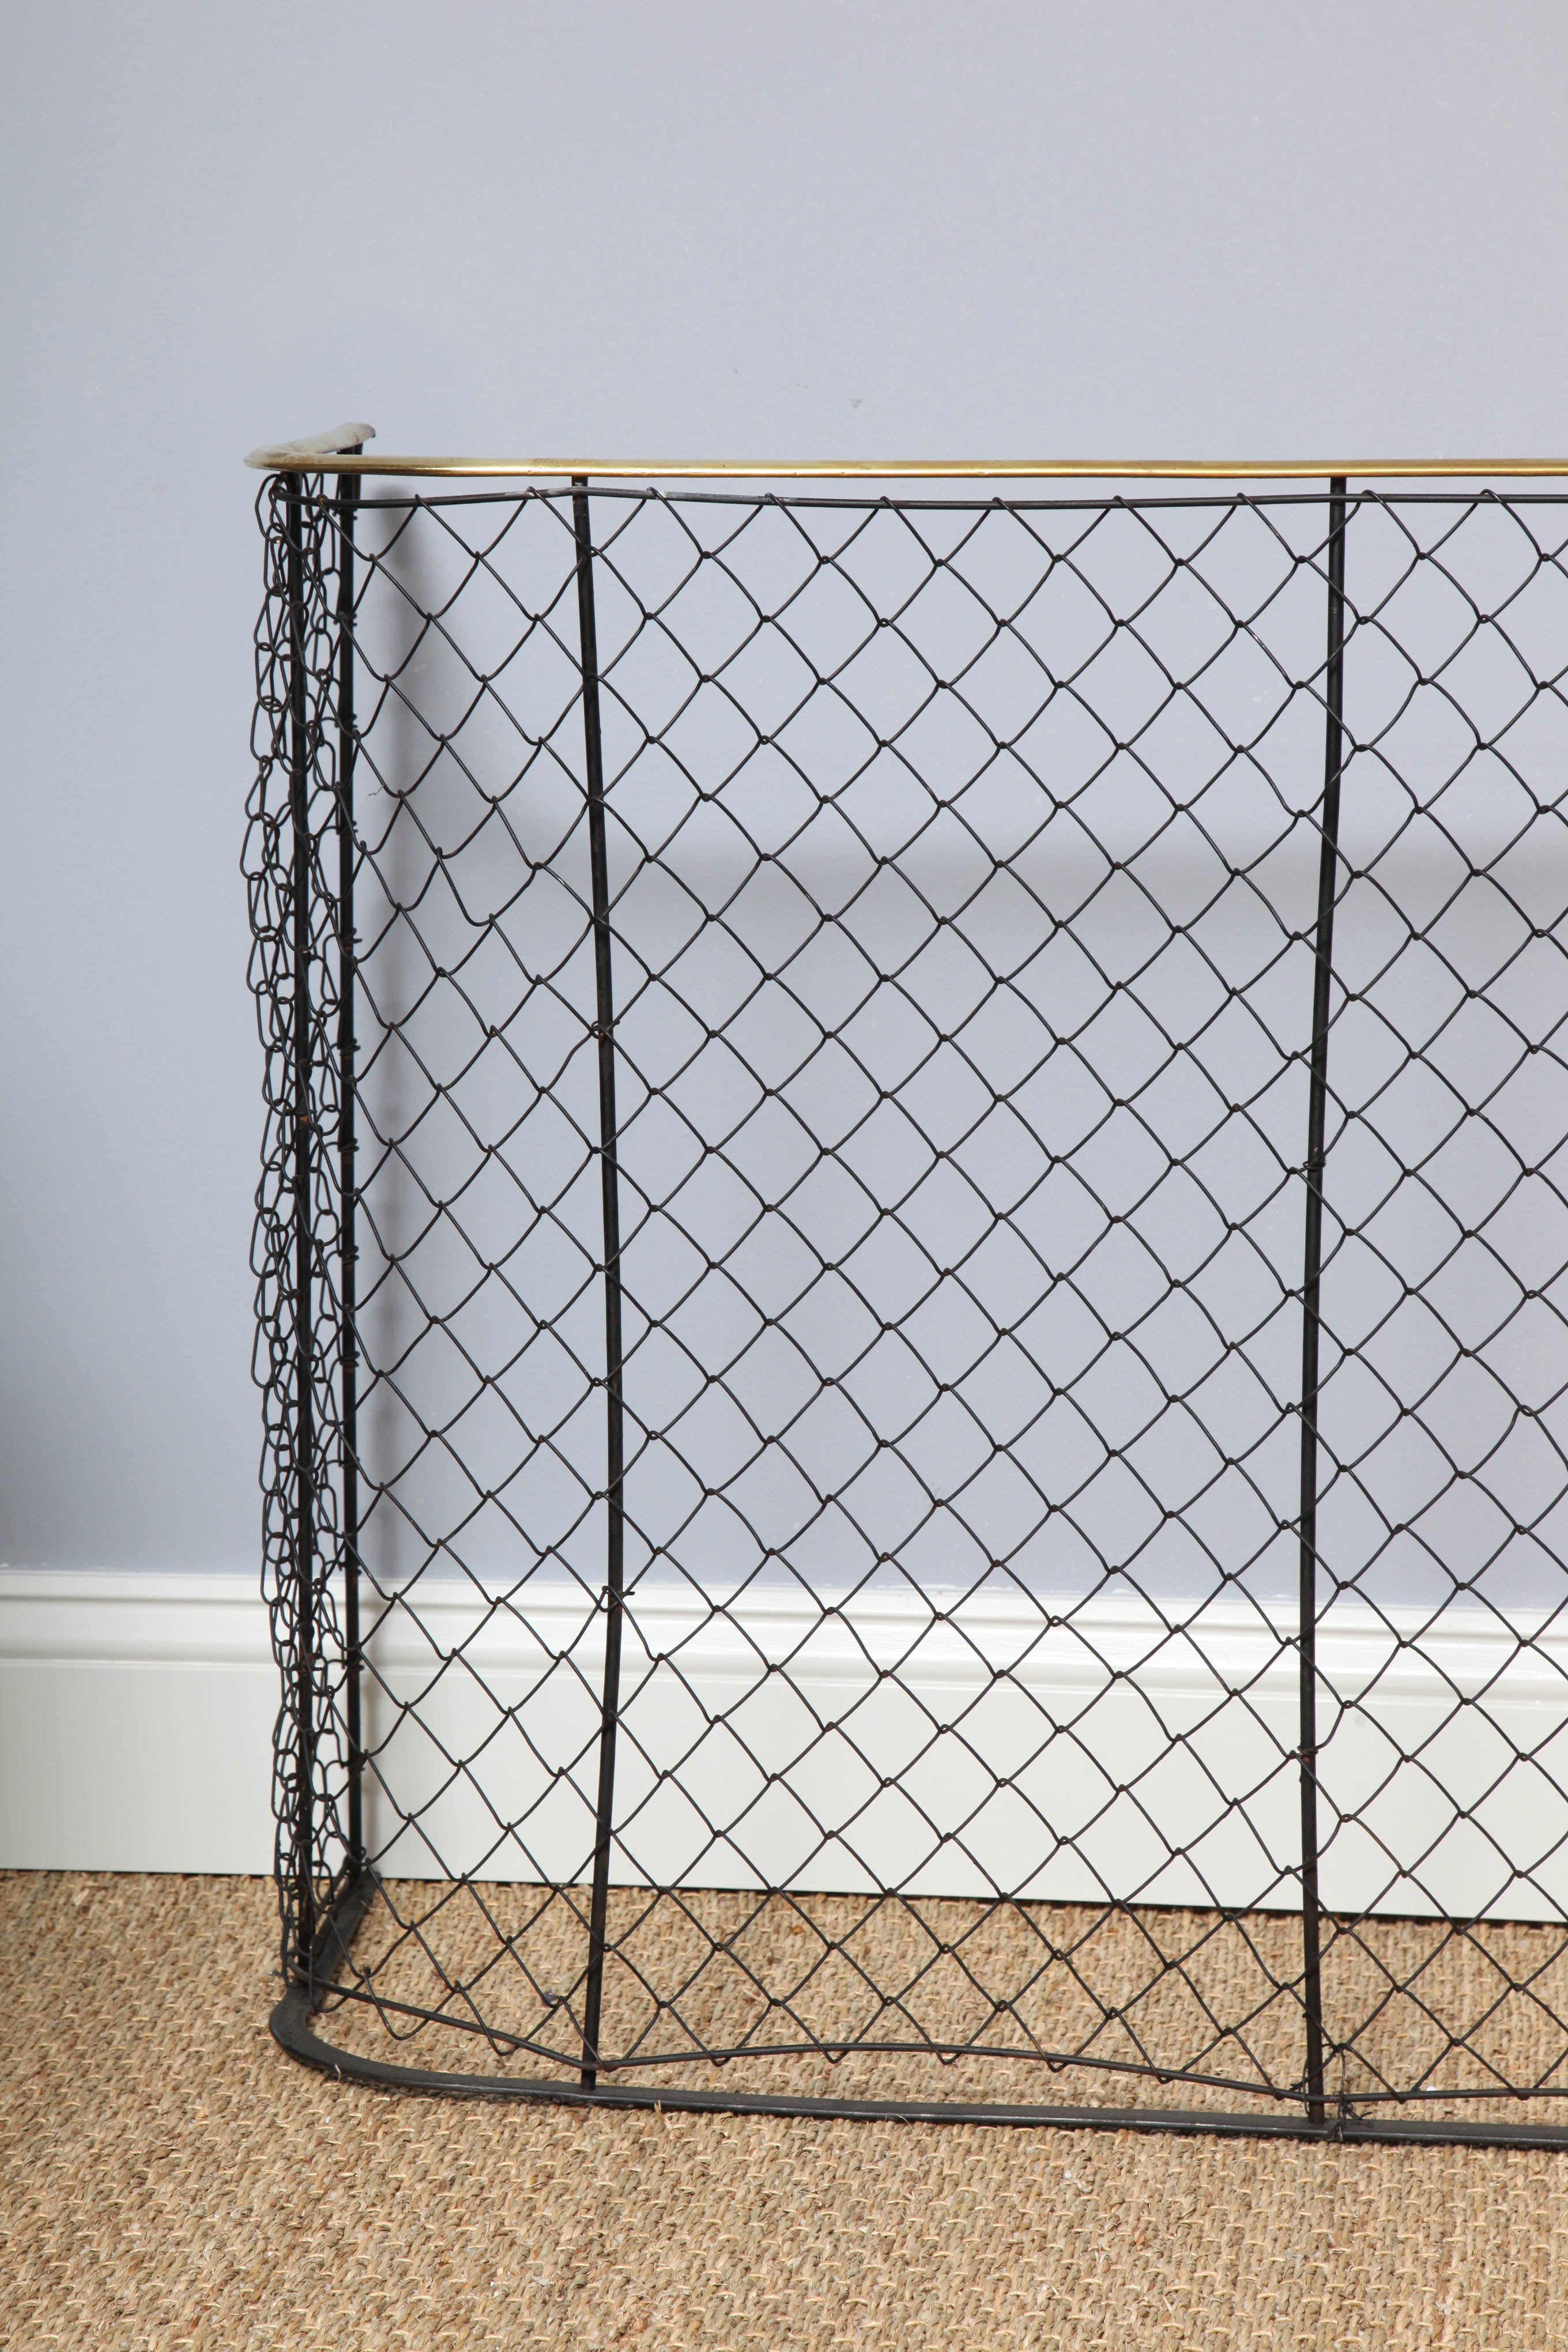 Englisches schmiedeeisernes Gitter aus dem 19. Jahrhundert mit Messingverzierung und breitem Netz.  Ursprünglich zum Schutz von Haustieren und Kindern vor dem Kamin verwendet.  Jetzt ein dekoratives Accessoire.